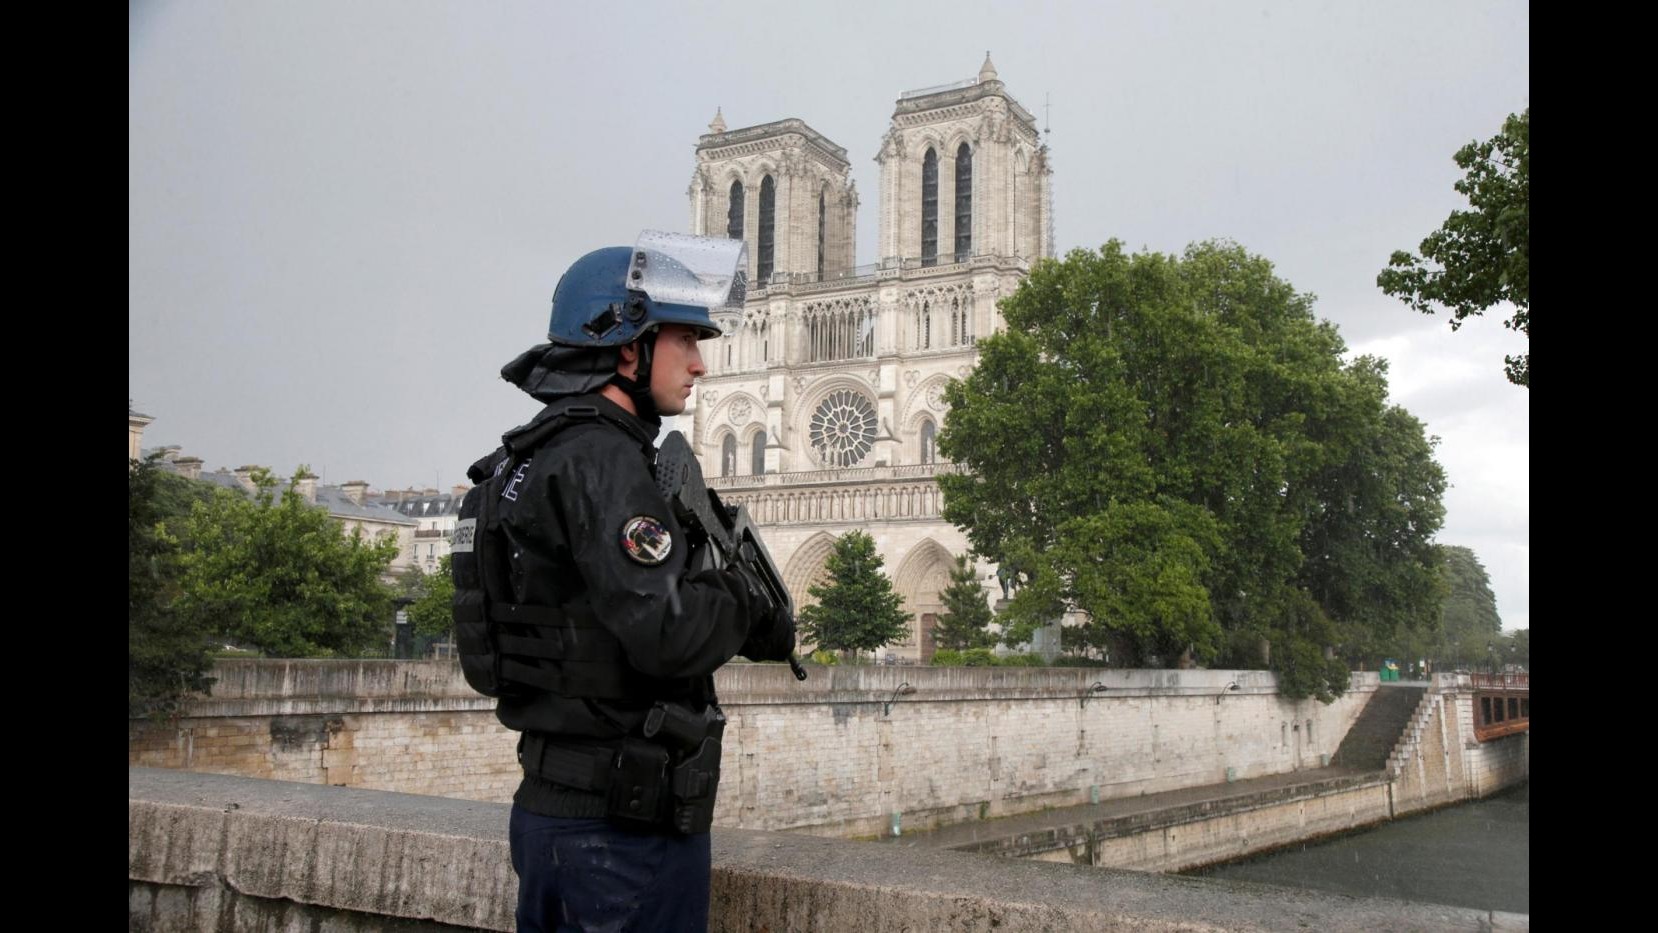 FOTO Notre Dame, uomo assalta polizia con un martello